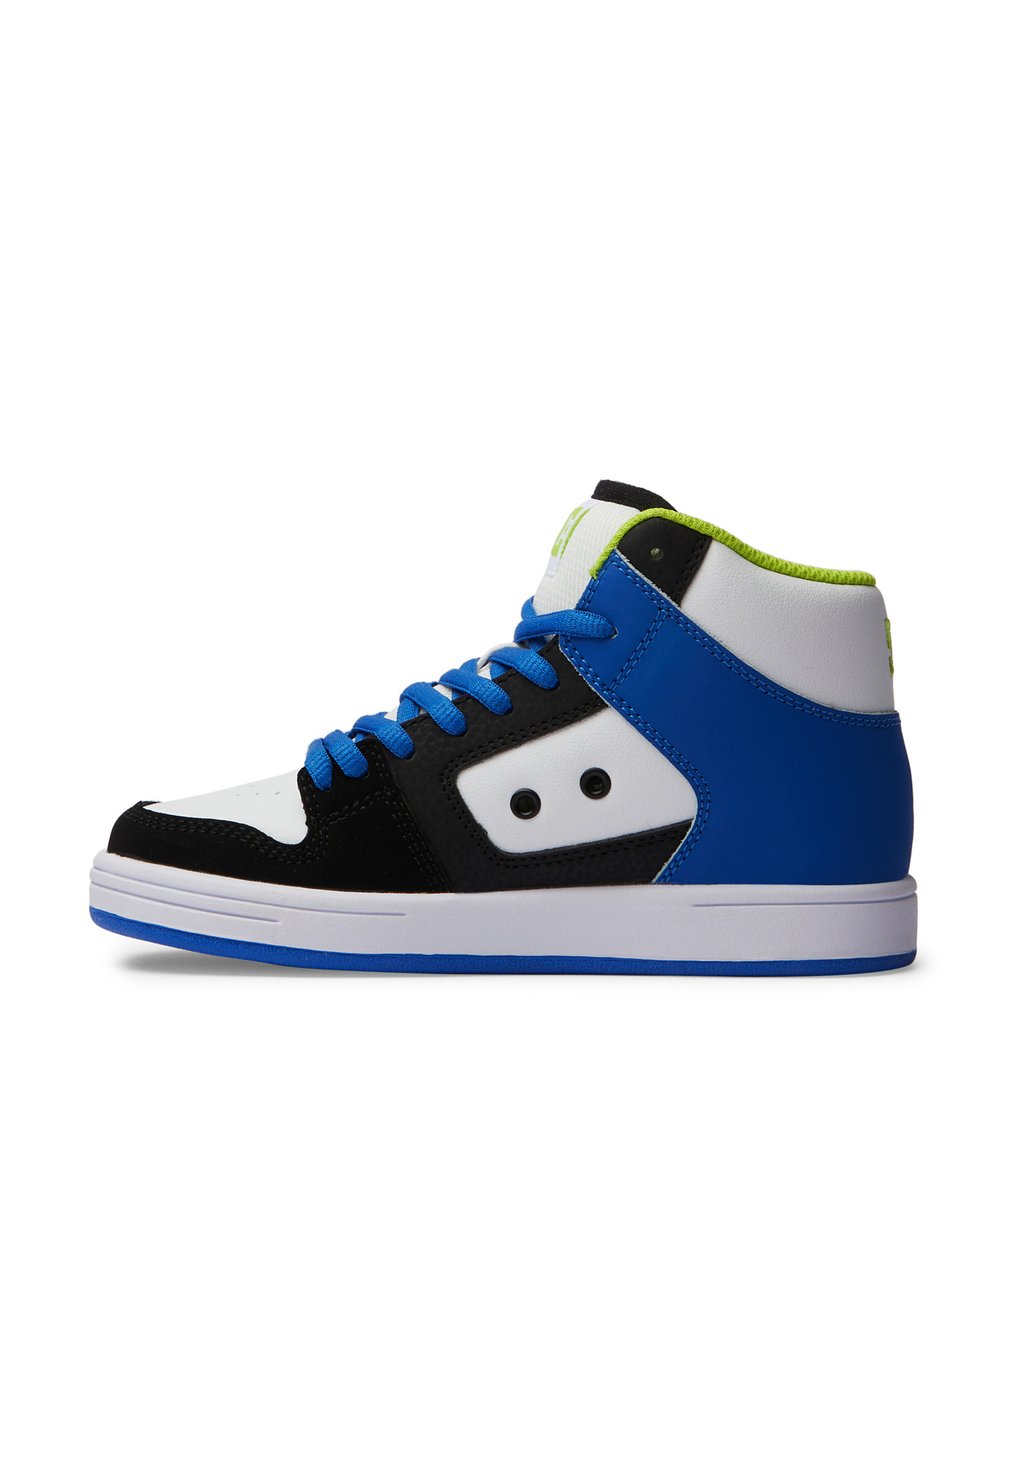 Кроссовки высокие MANTECA 4 HI XKBG DC Shoes, цвет black/blue/green